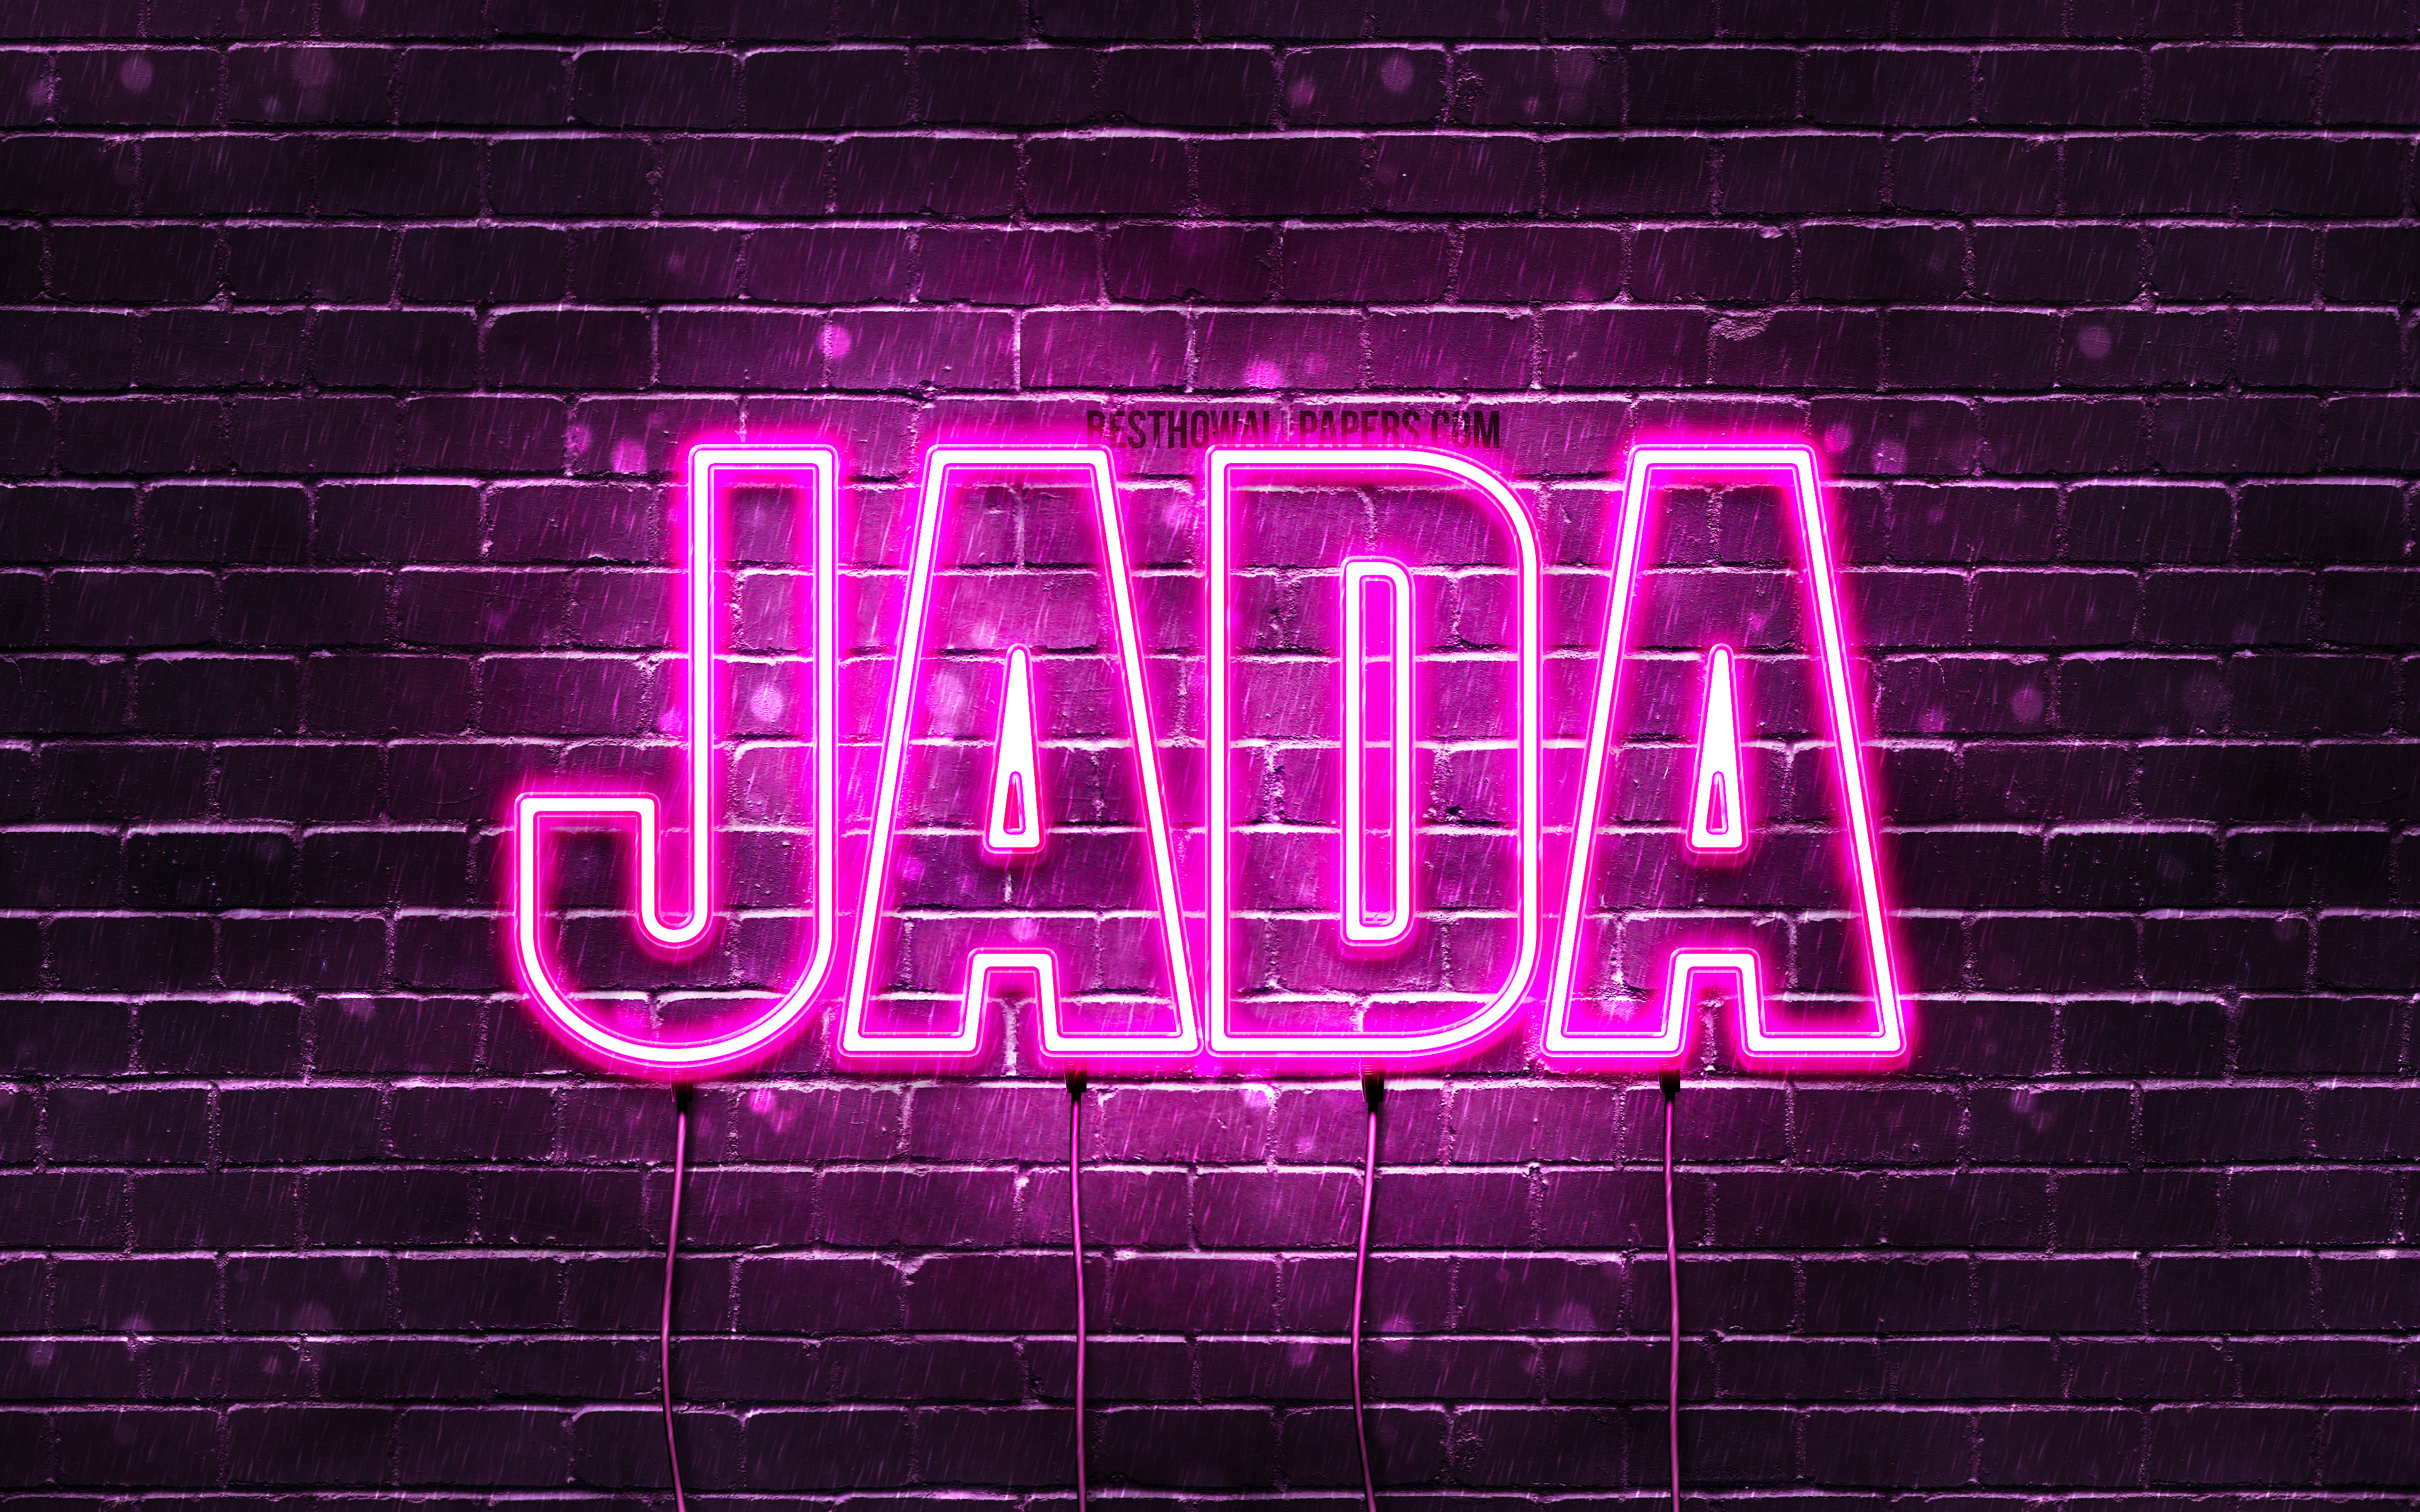 Wallpaper Jada 4k With Names Female